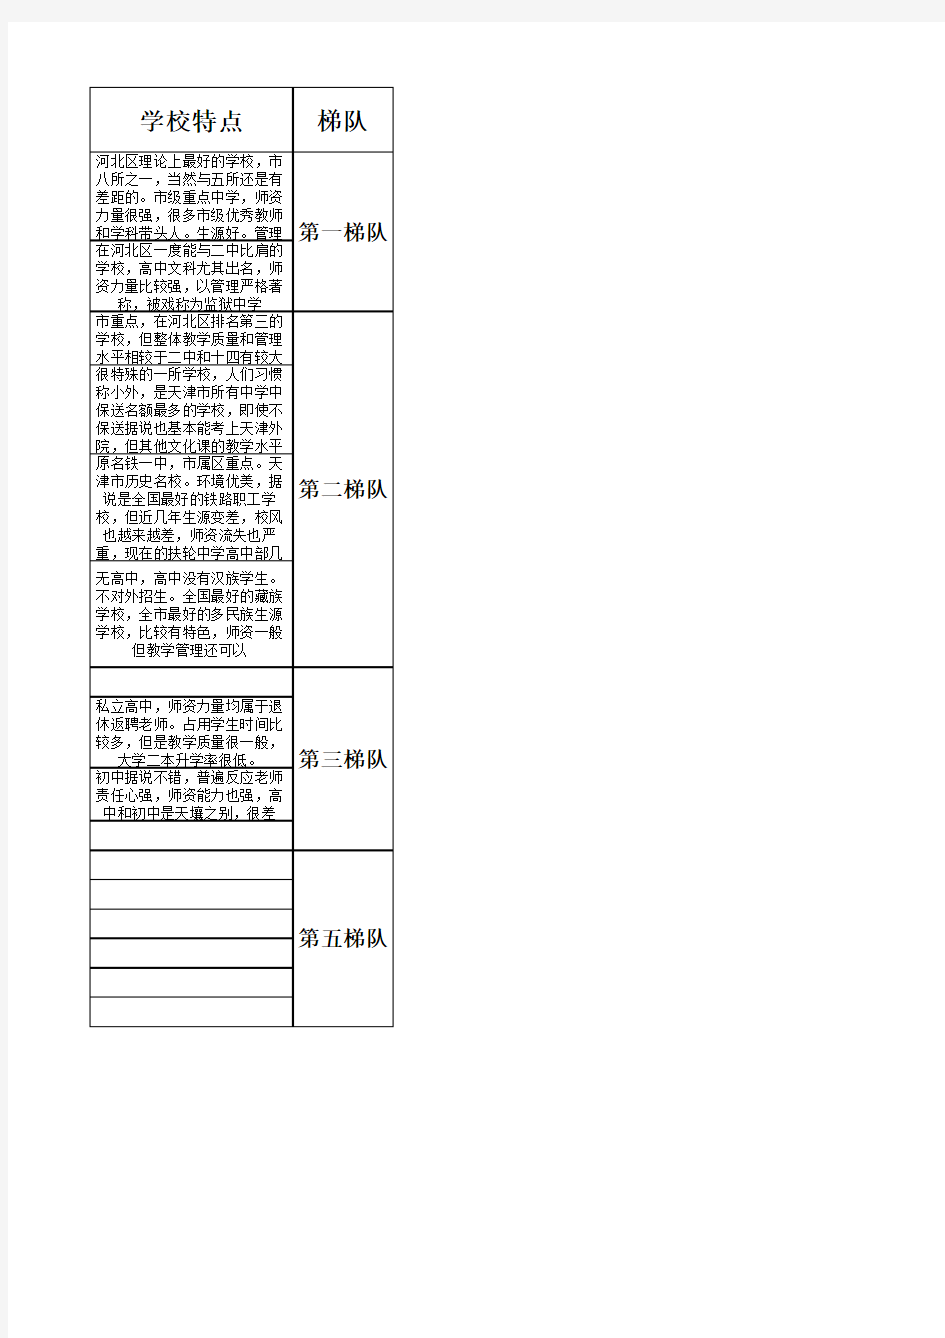 天津市各区学校一览表